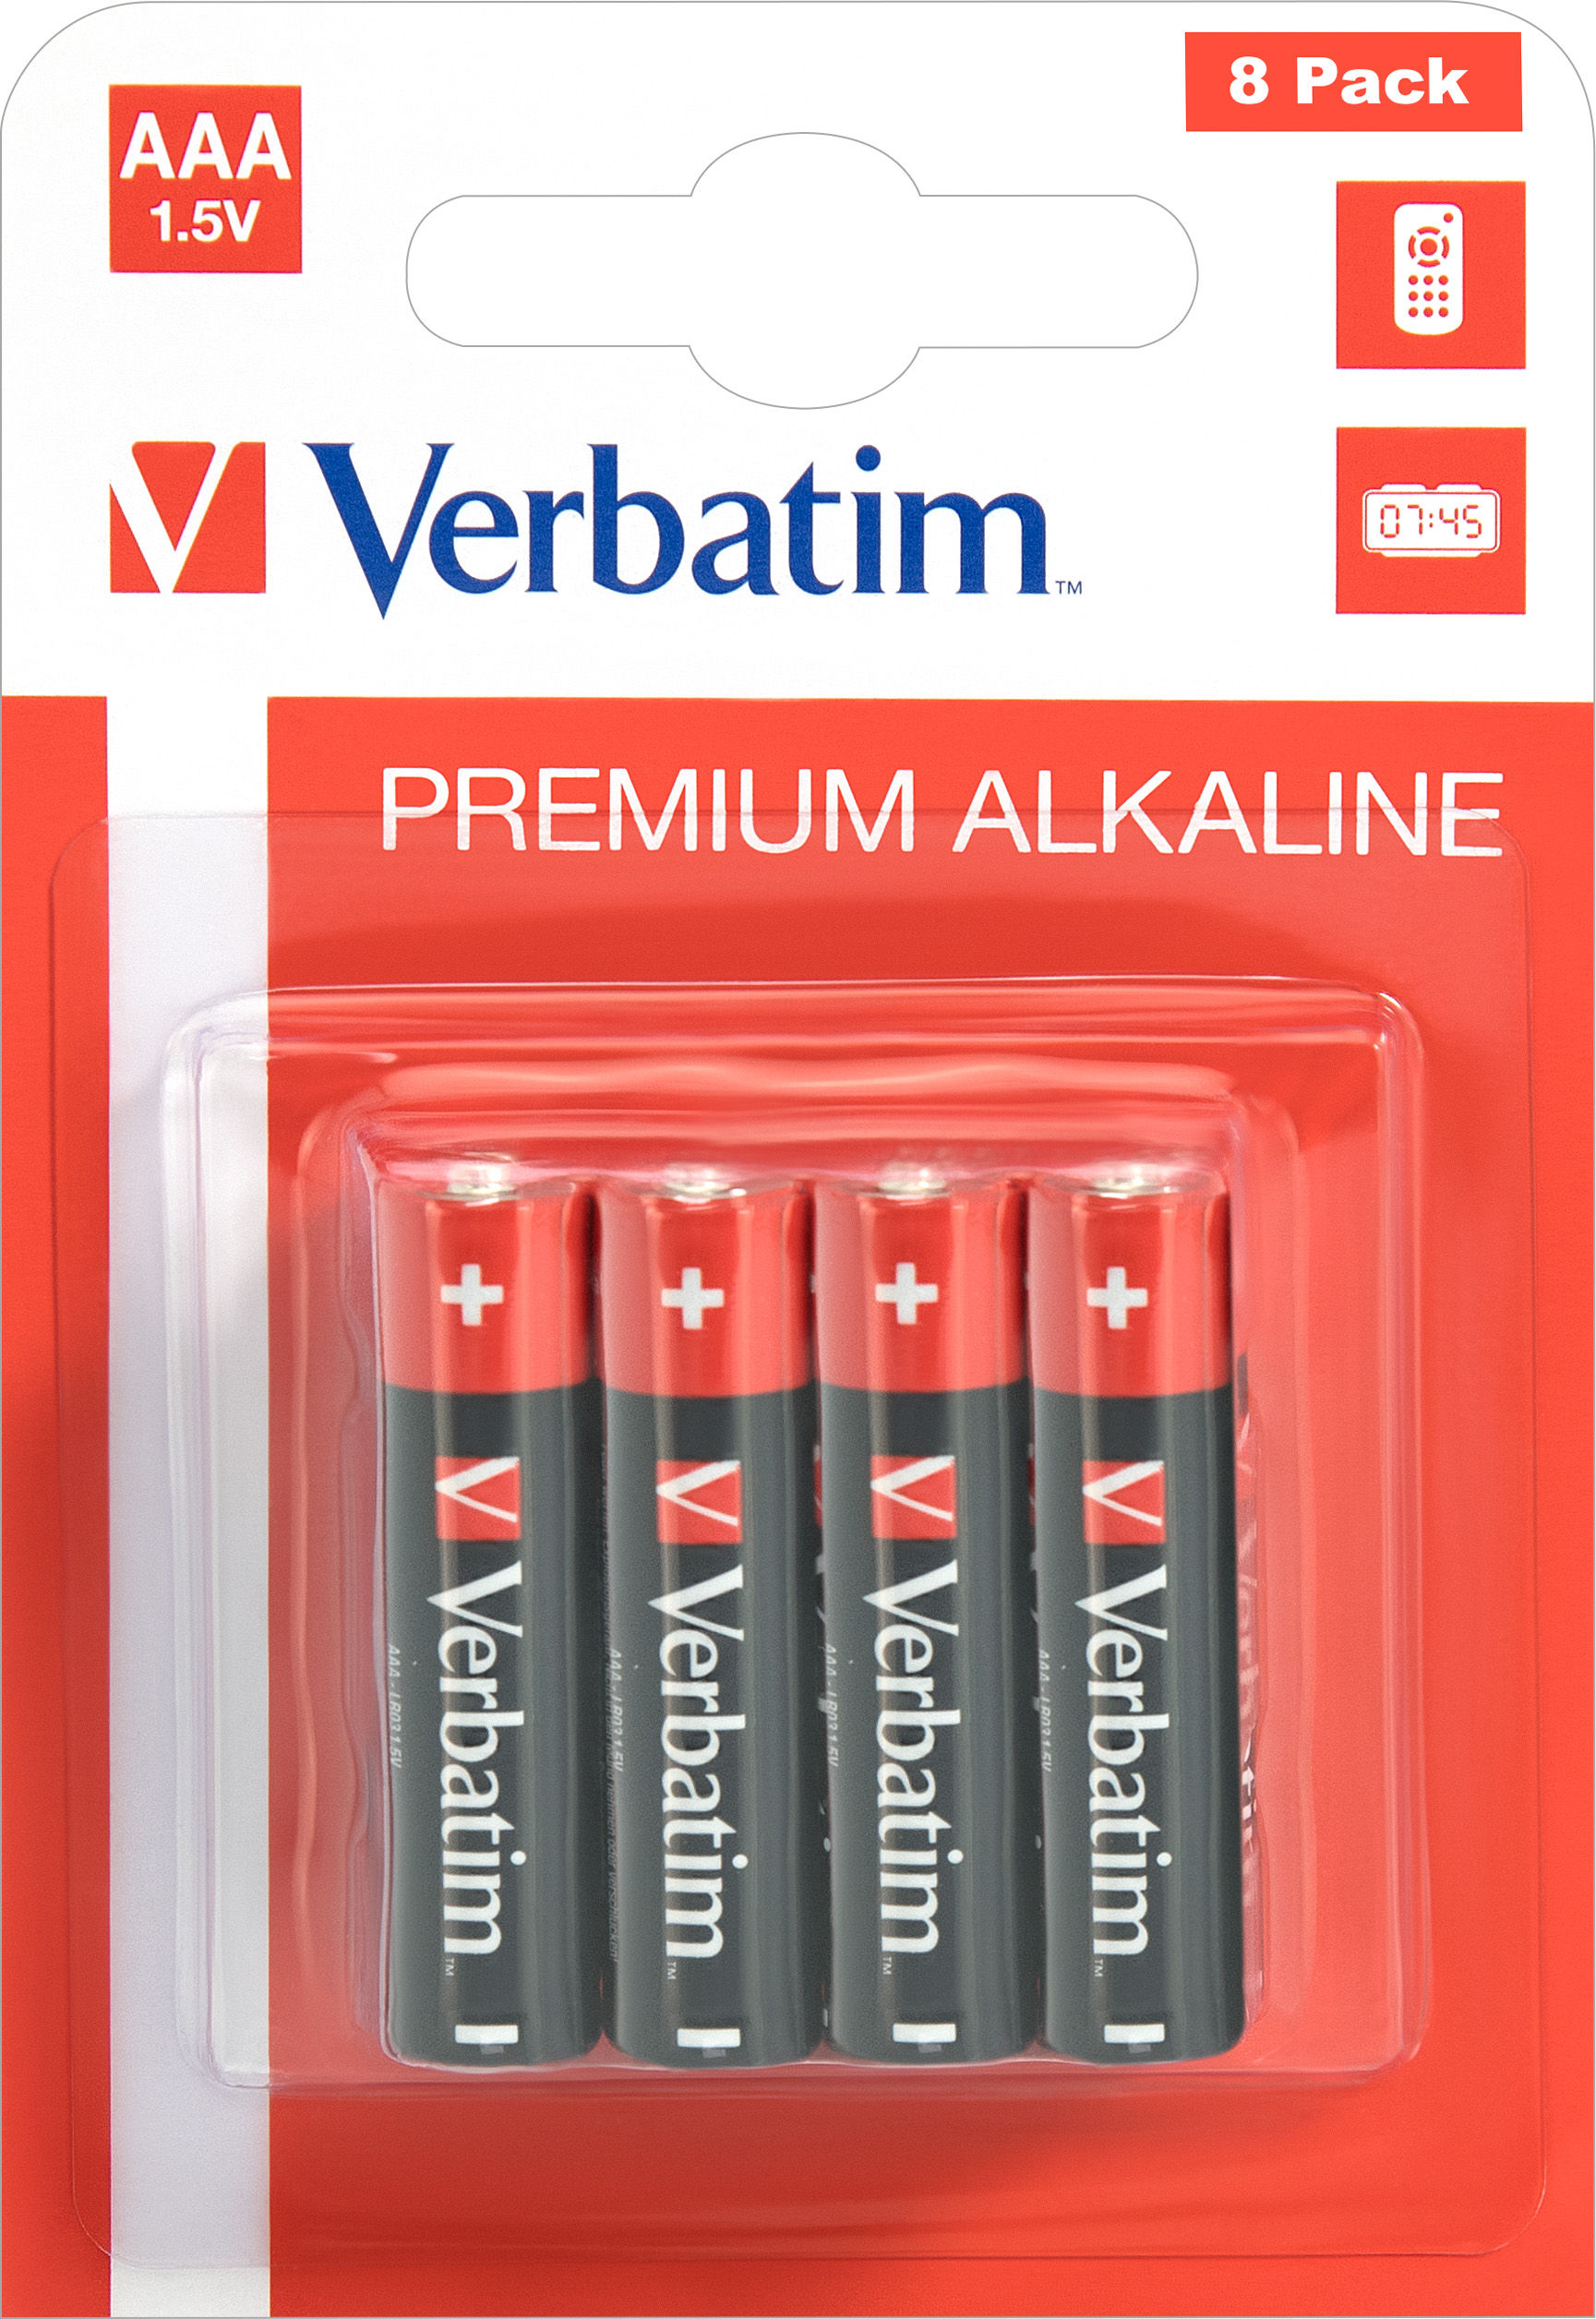 Verbatim Batterie Alkaline, Micro, AAA, LR03, 1.5V Premium, Retail Blister (8-Pack)